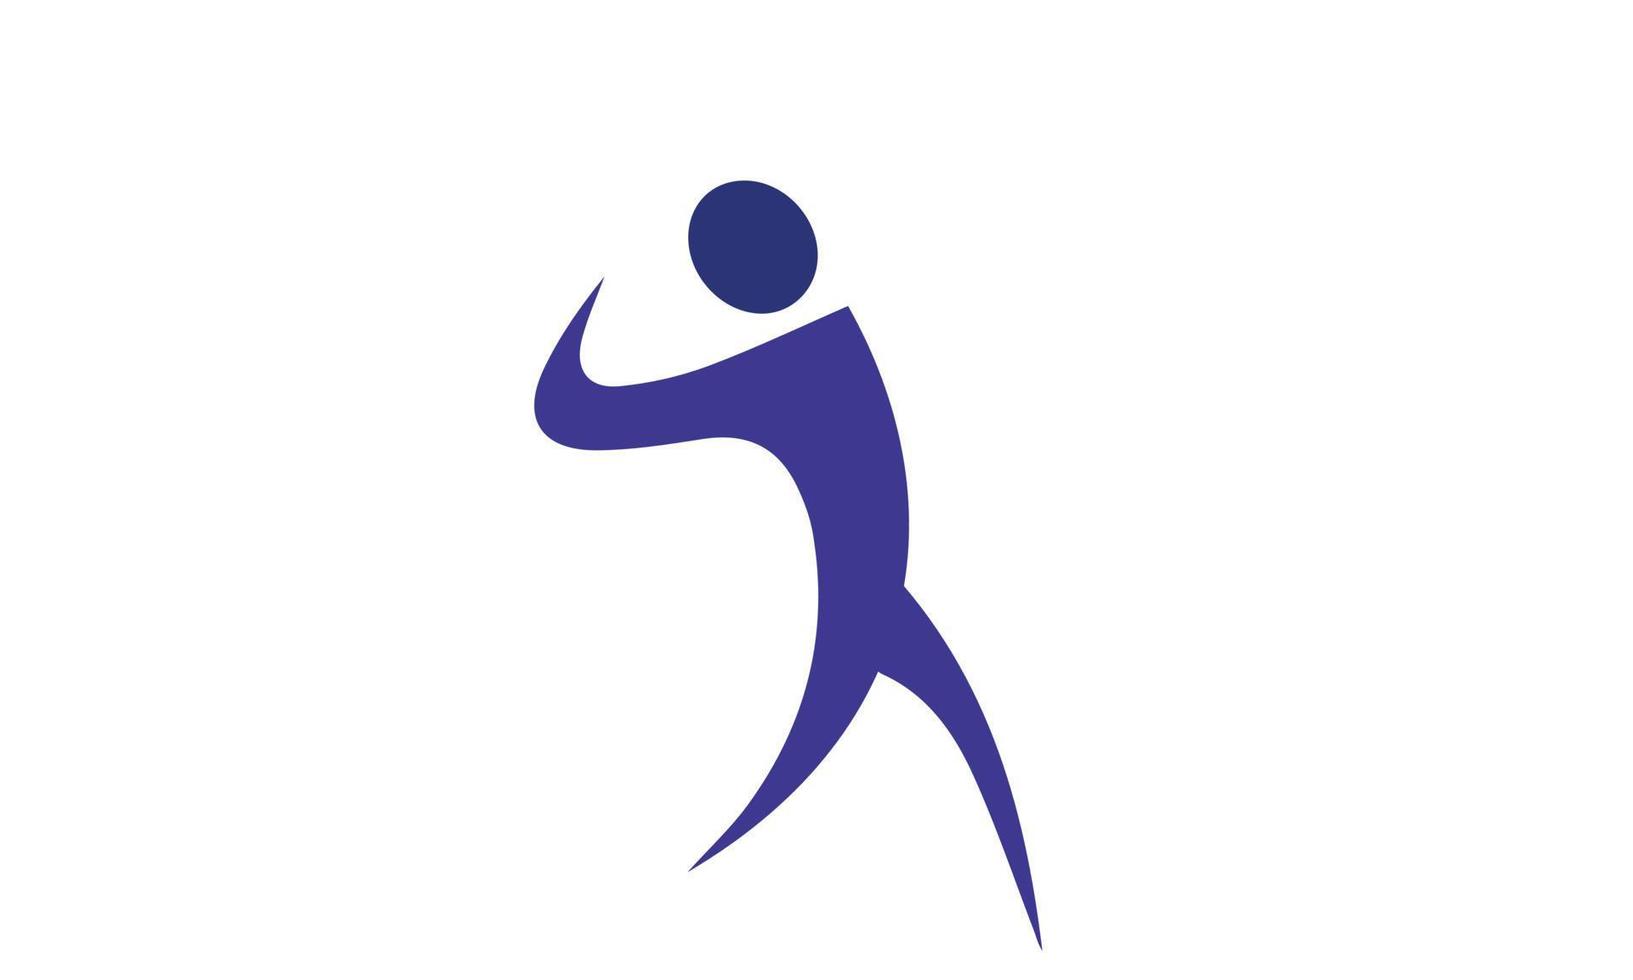 Healthy running man logo design icon elements vector image. Running logo design, marathon logo template, running club or sports club